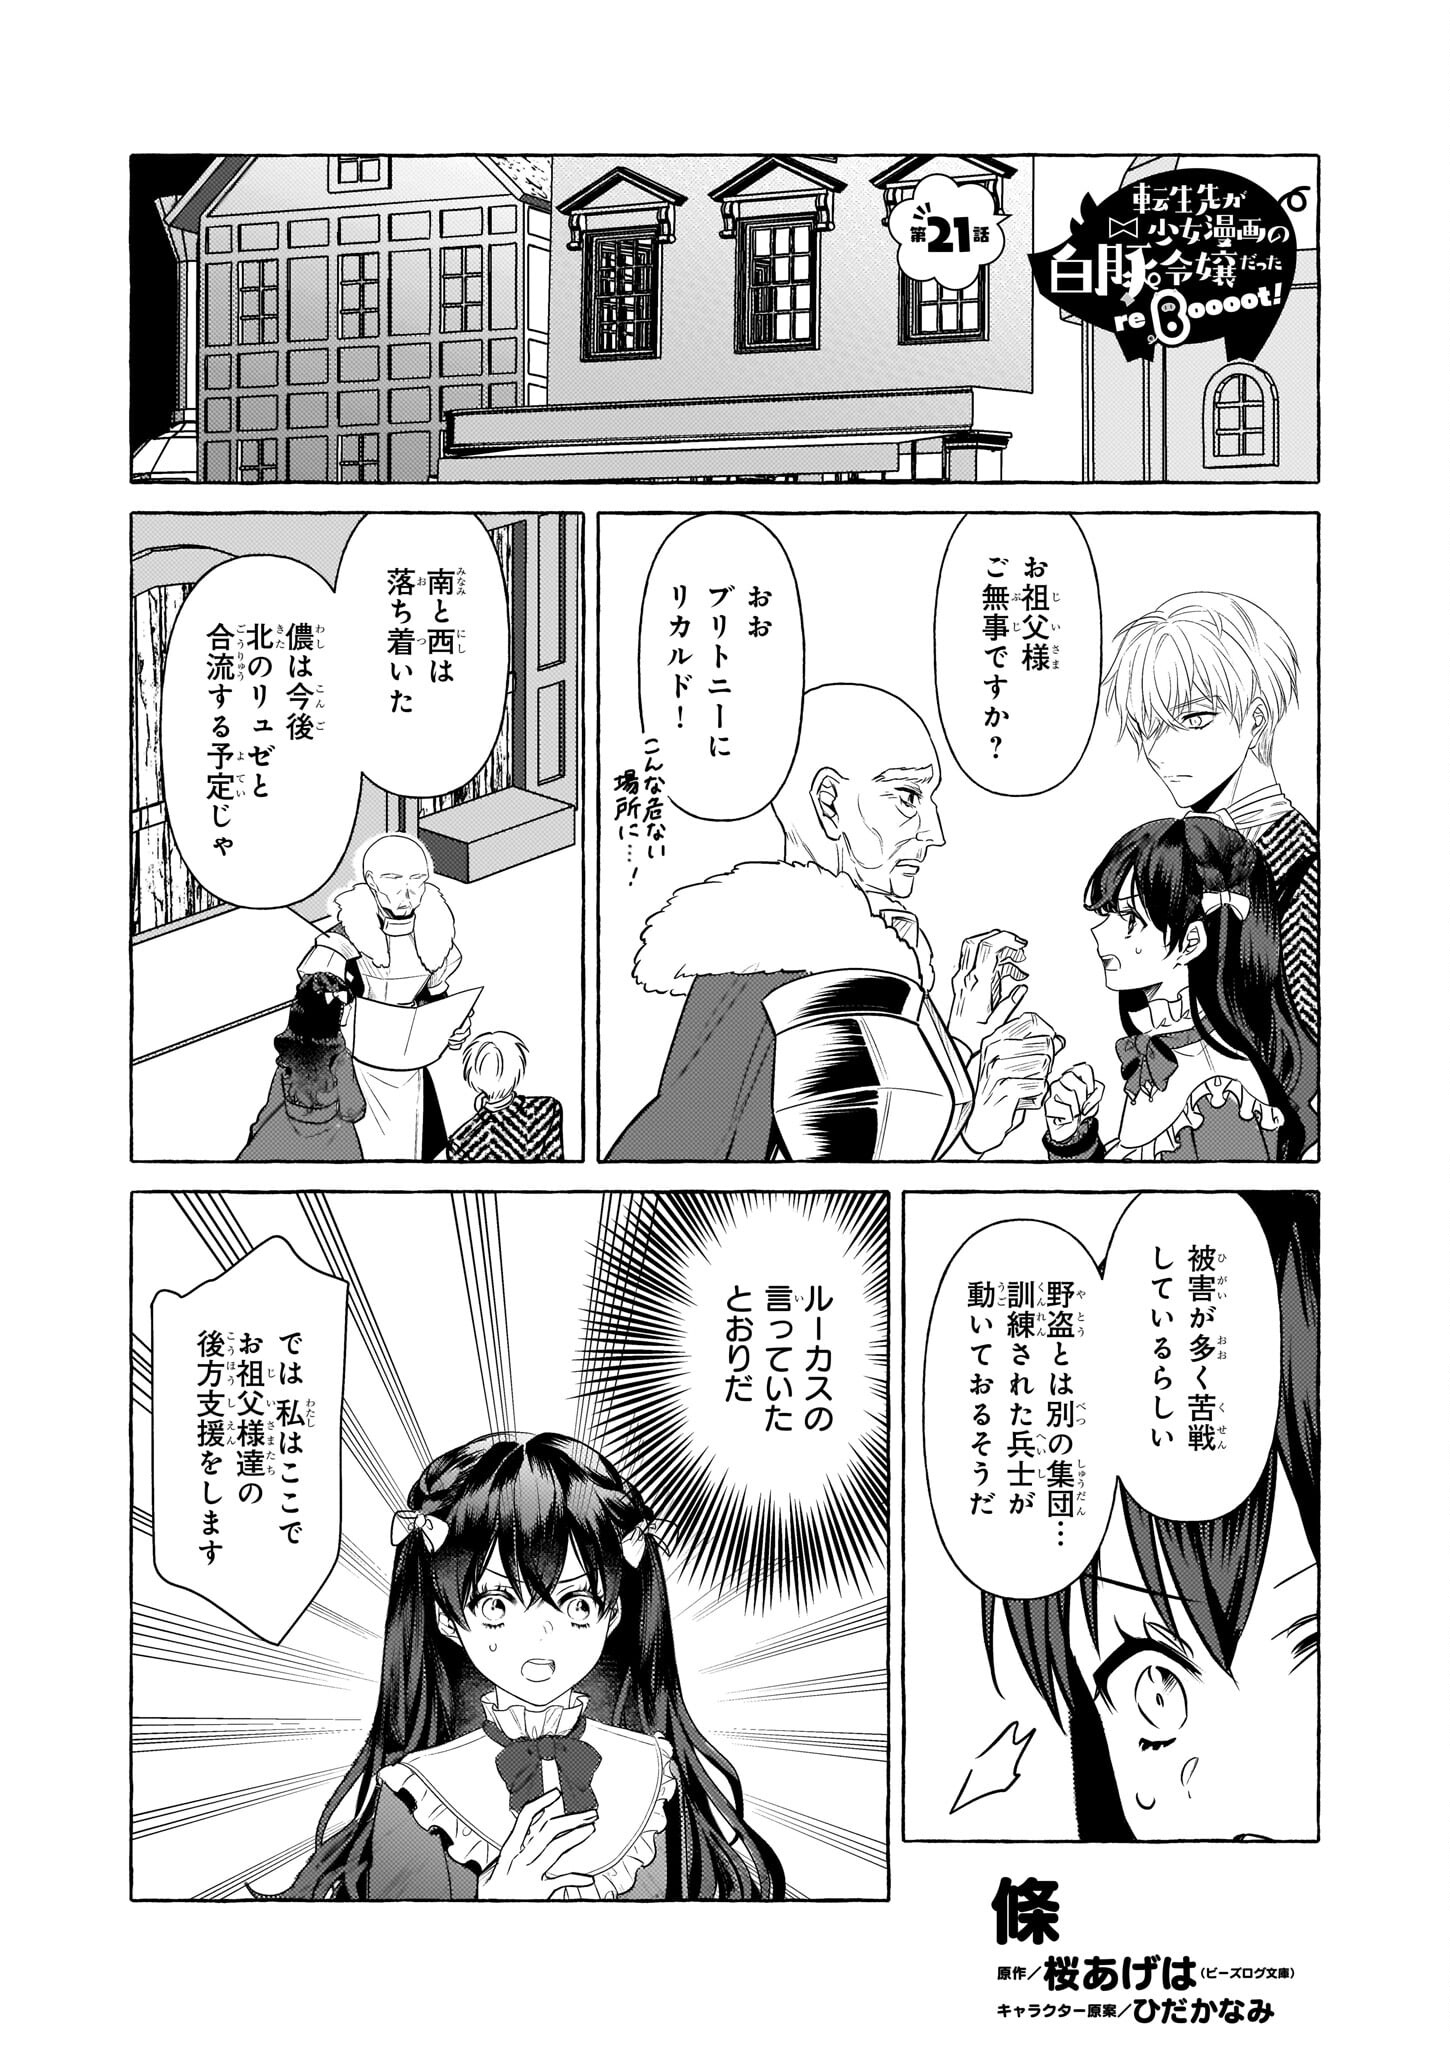 Tenseisaki ga Shoujo Manga no Shirobuta Reijou datta reBoooot! - Chapter 21 - Page 1